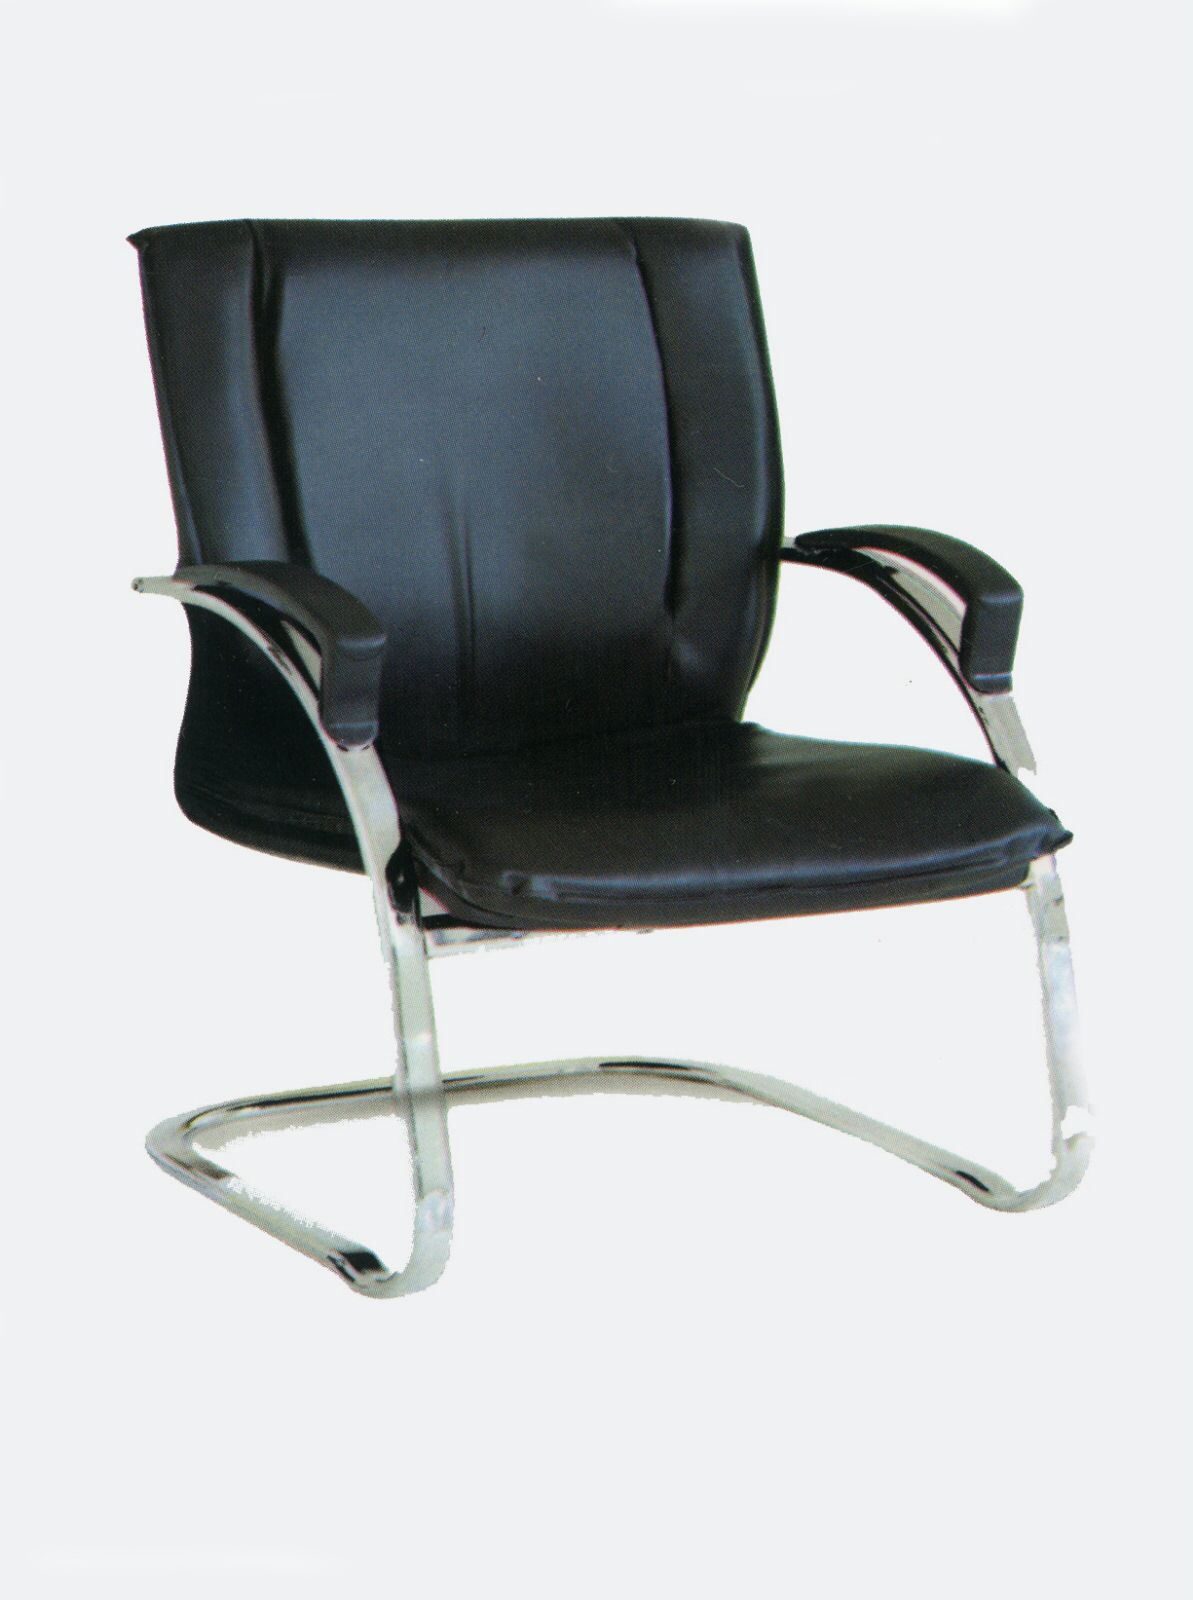 صندلي كنفرانسي<br/>پايه ثابت استيل <br/>داراي 2 سال ضمانت و خدمات پس از فروش<br/>تهيه شده از بهترين مواد اوليه در ساخت محصول<br/>روكش چرم درجه يك <br/>فوم درجه يك<br/>صندلي ب buy-sell office-supplies chairs-furniture